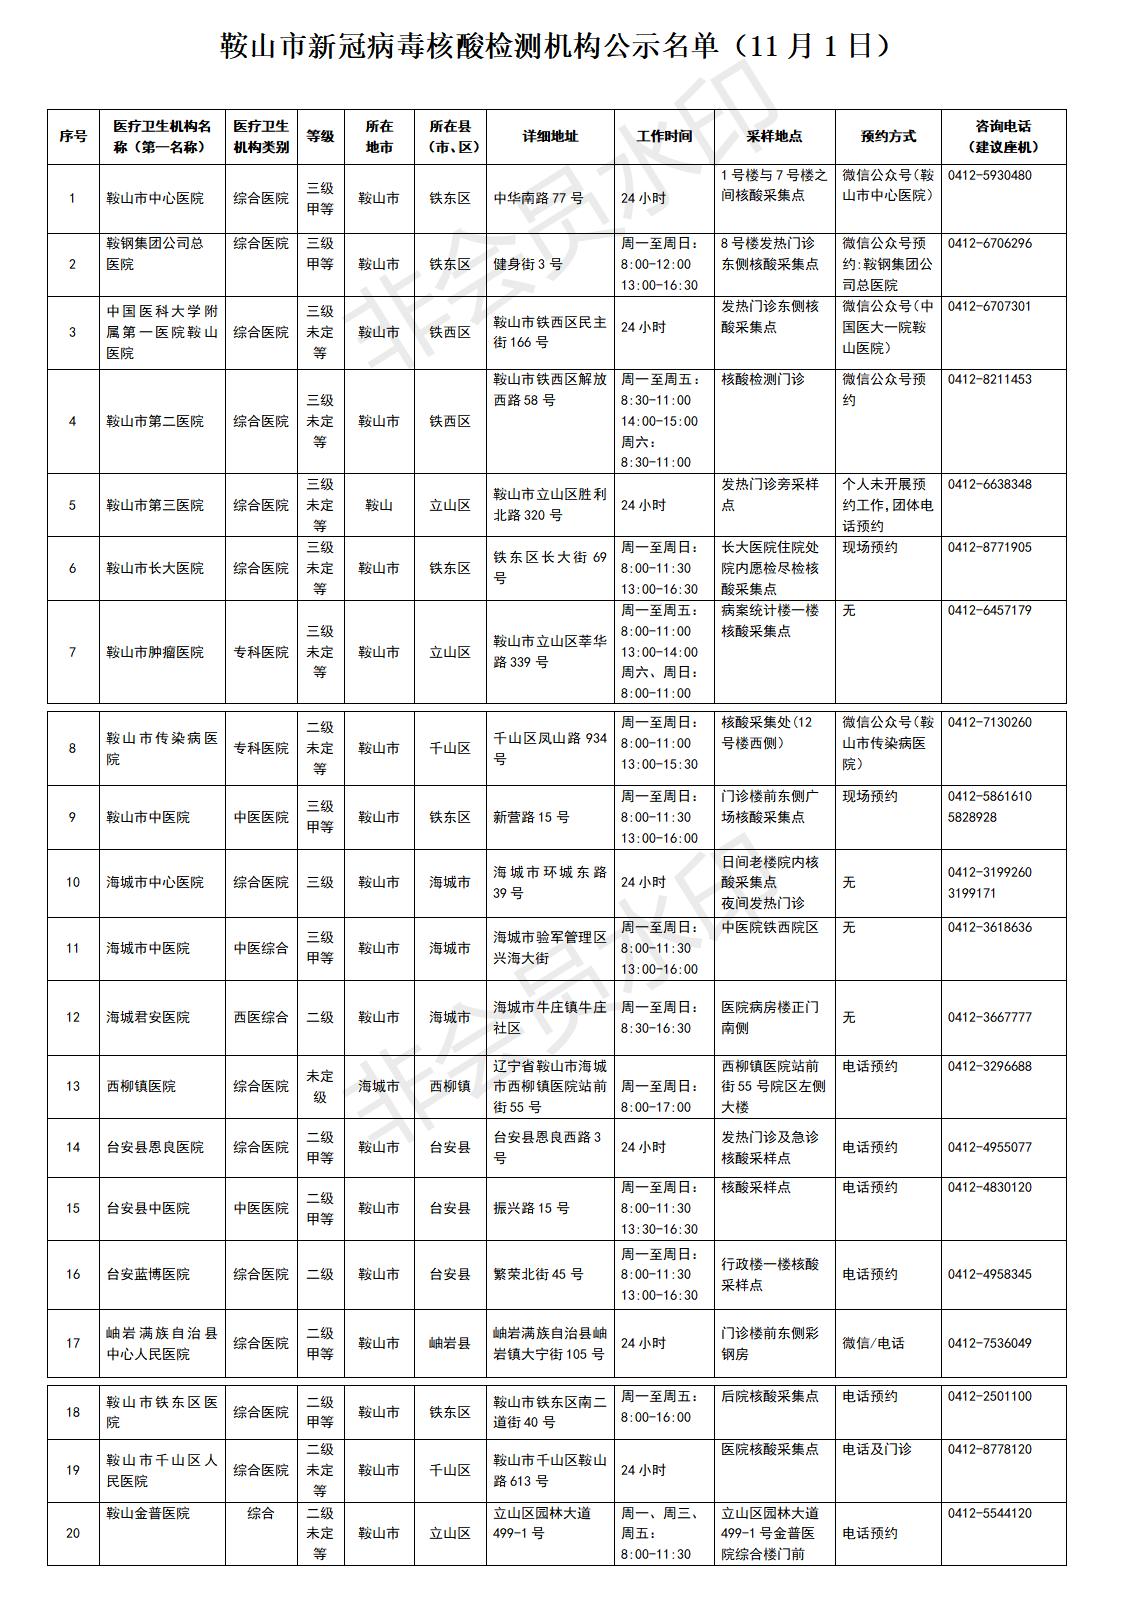 鞍山市新冠病毒核酸检测机构公示名单.jpg